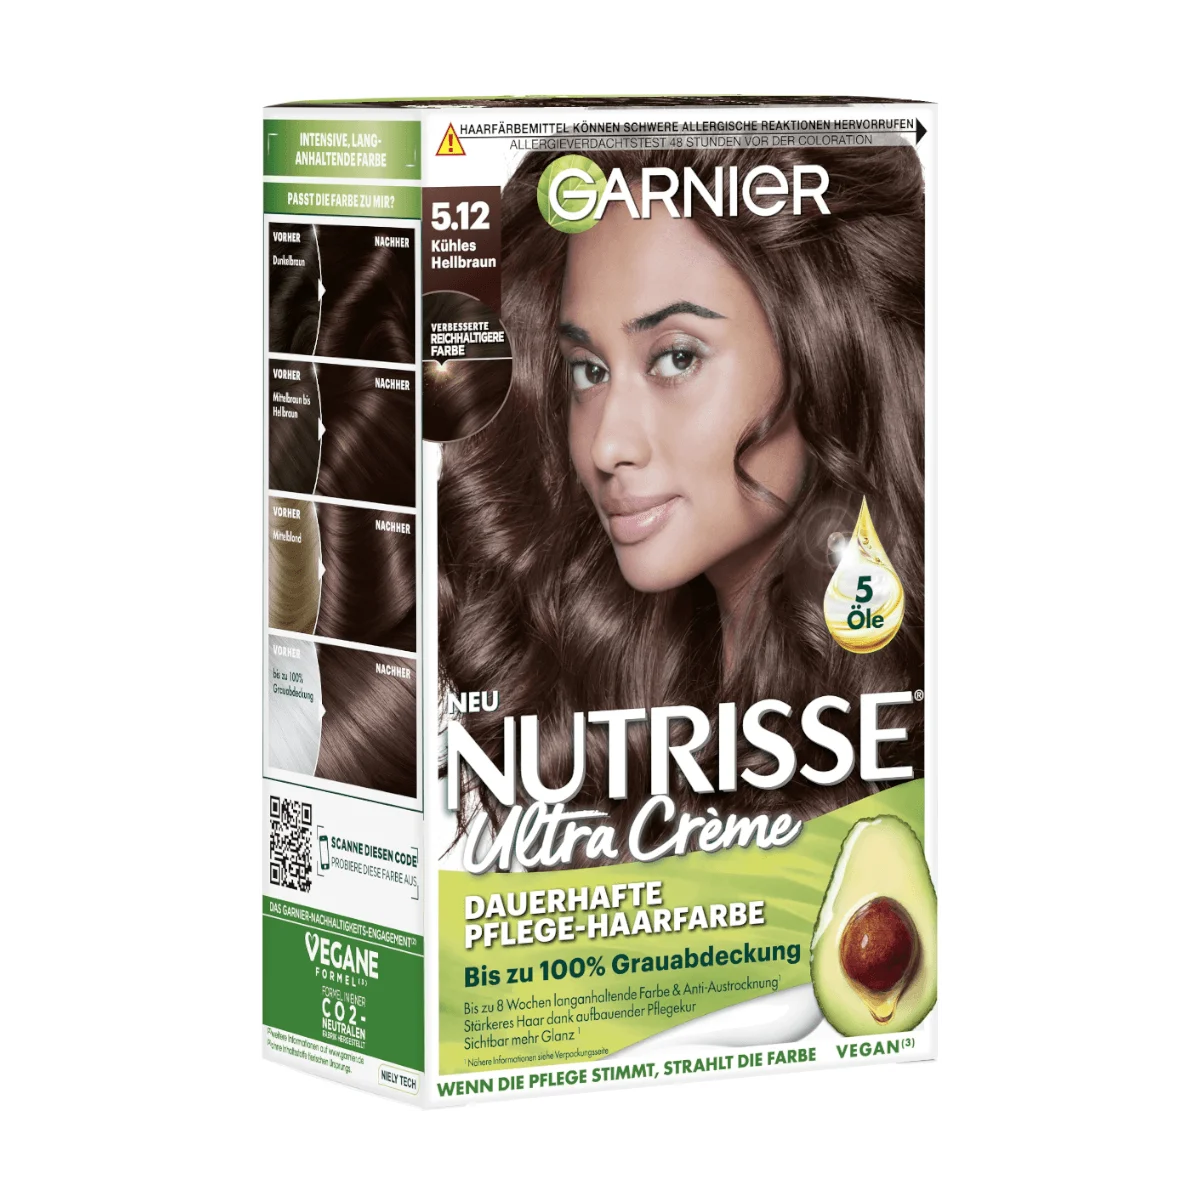 Nutrisse Garnier Pflege-Haarfarbe 5.12 Hellbraun, Kühles